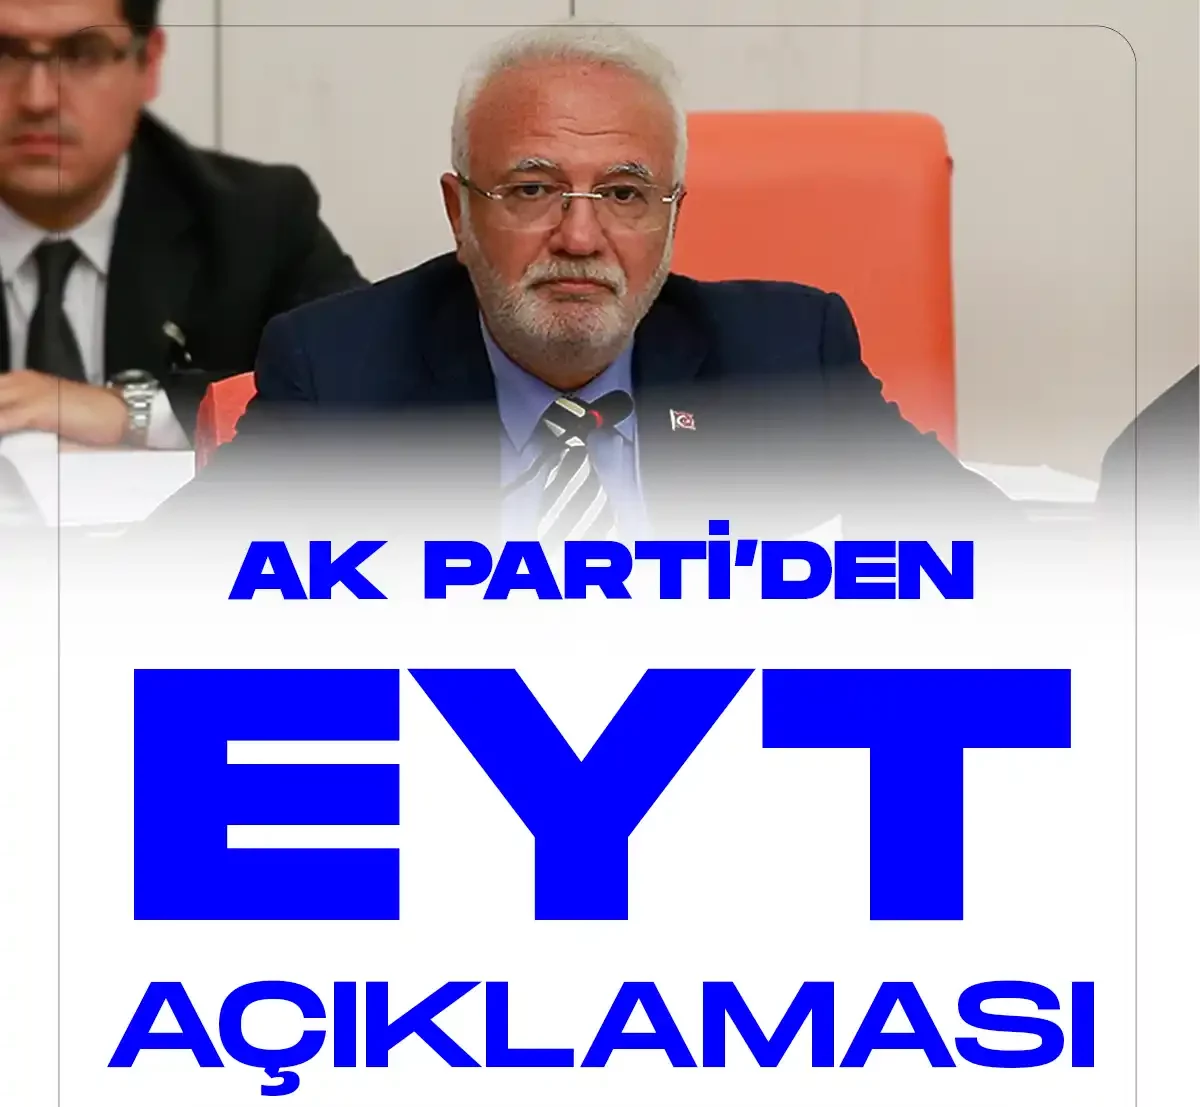 AK Parti Grup Başkanvekili Mustafa Elitaştan EYT Açıklaması geldi.